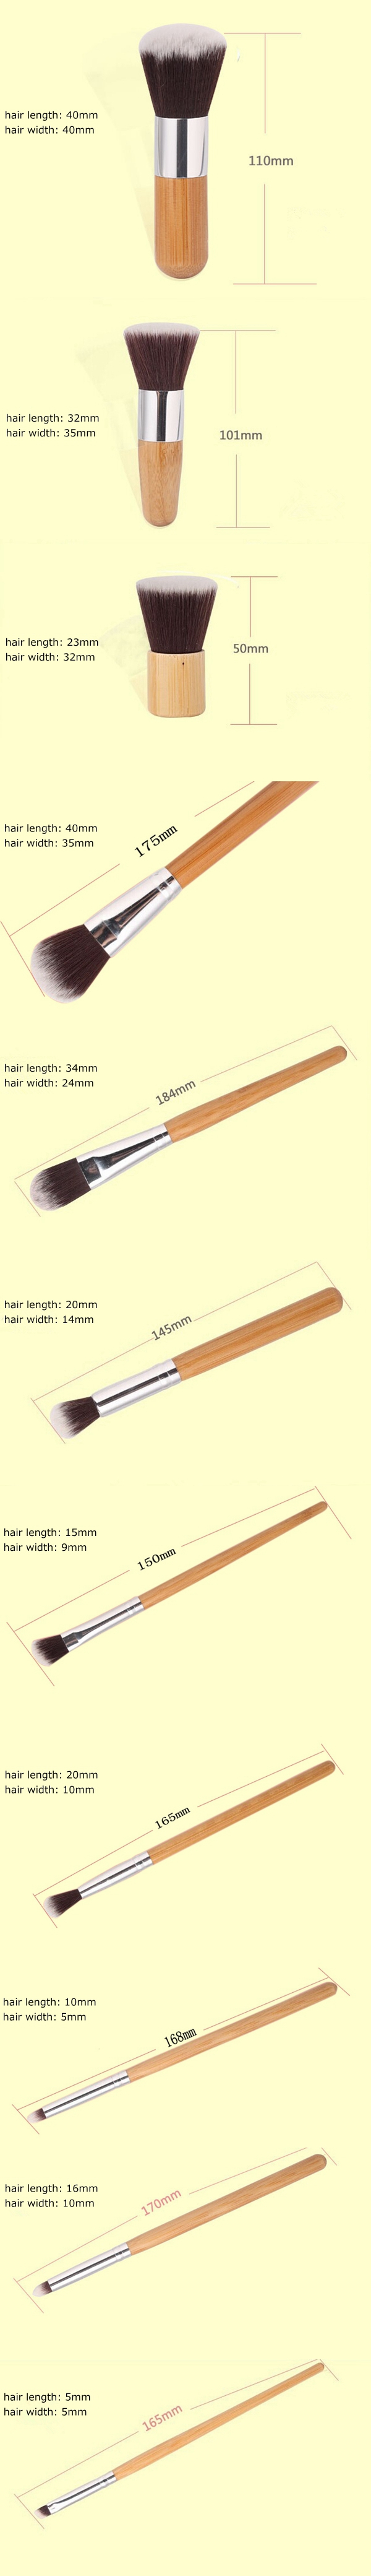  MAANGE 11 Pcs Bamboo Handle Makeup Eyeshadow Blush Concealer Brush Set